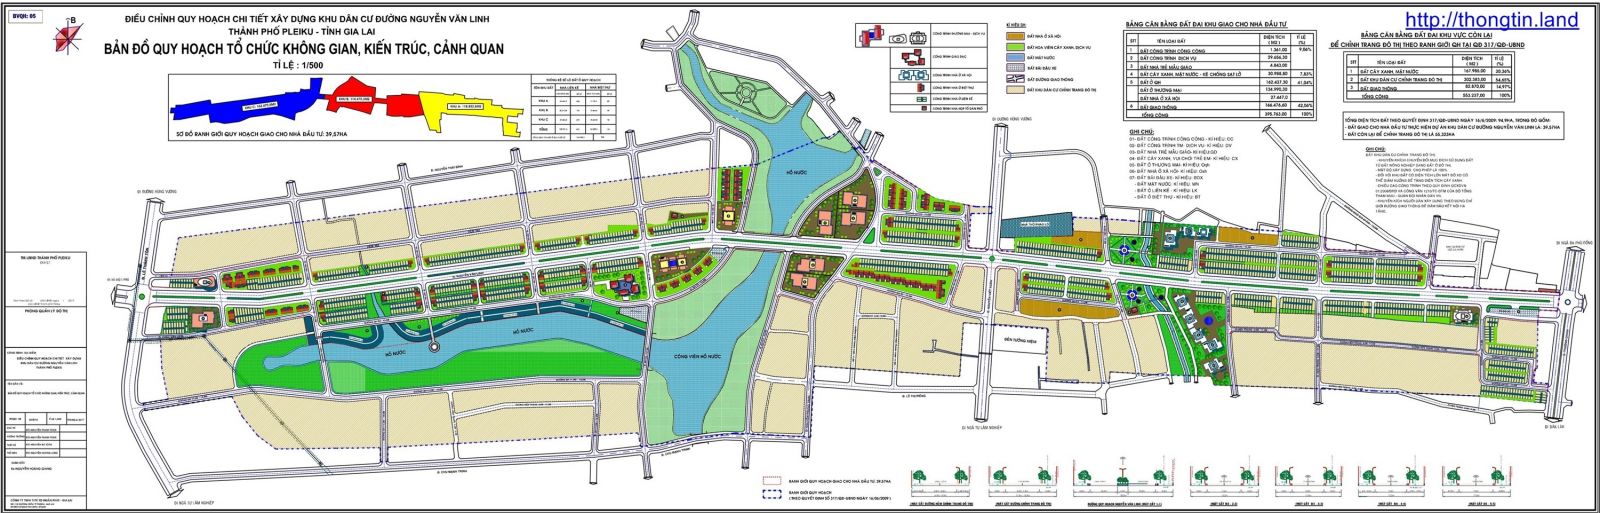 THONGTIN.LAND quy hoạch Pleiku - Nắm bắt thông tin mới nhất về quy hoạch Pleiku, giúp bạn hiểu rõ hơn về phát triển và mở rộng kinh tế của thành phố. Hãy cùng khám phá và tham gia đóng góp ý kiến cho sự phát triển bền vững của cộng đồng.